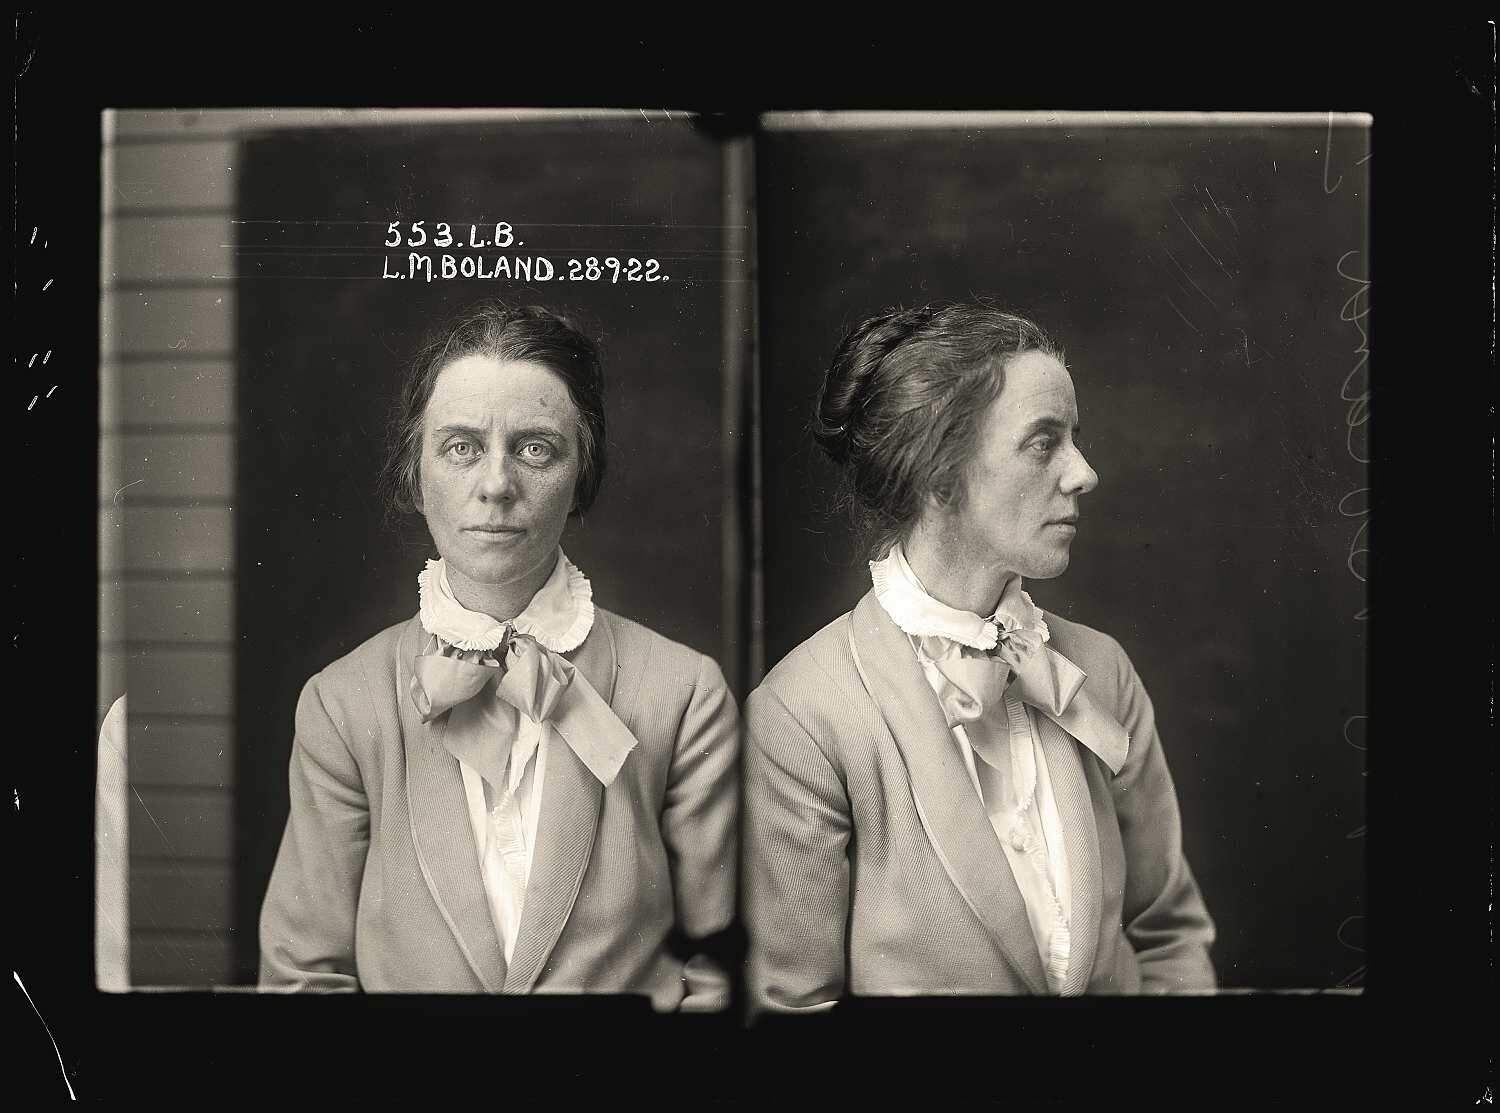 Лилиан Мэй Саутвелл Боланд, работала секретаршей у нелегальной абортистки, которая оперировала в приёмной дантиста. Архив судебной фотографии полиции Нового Южного Уэльса